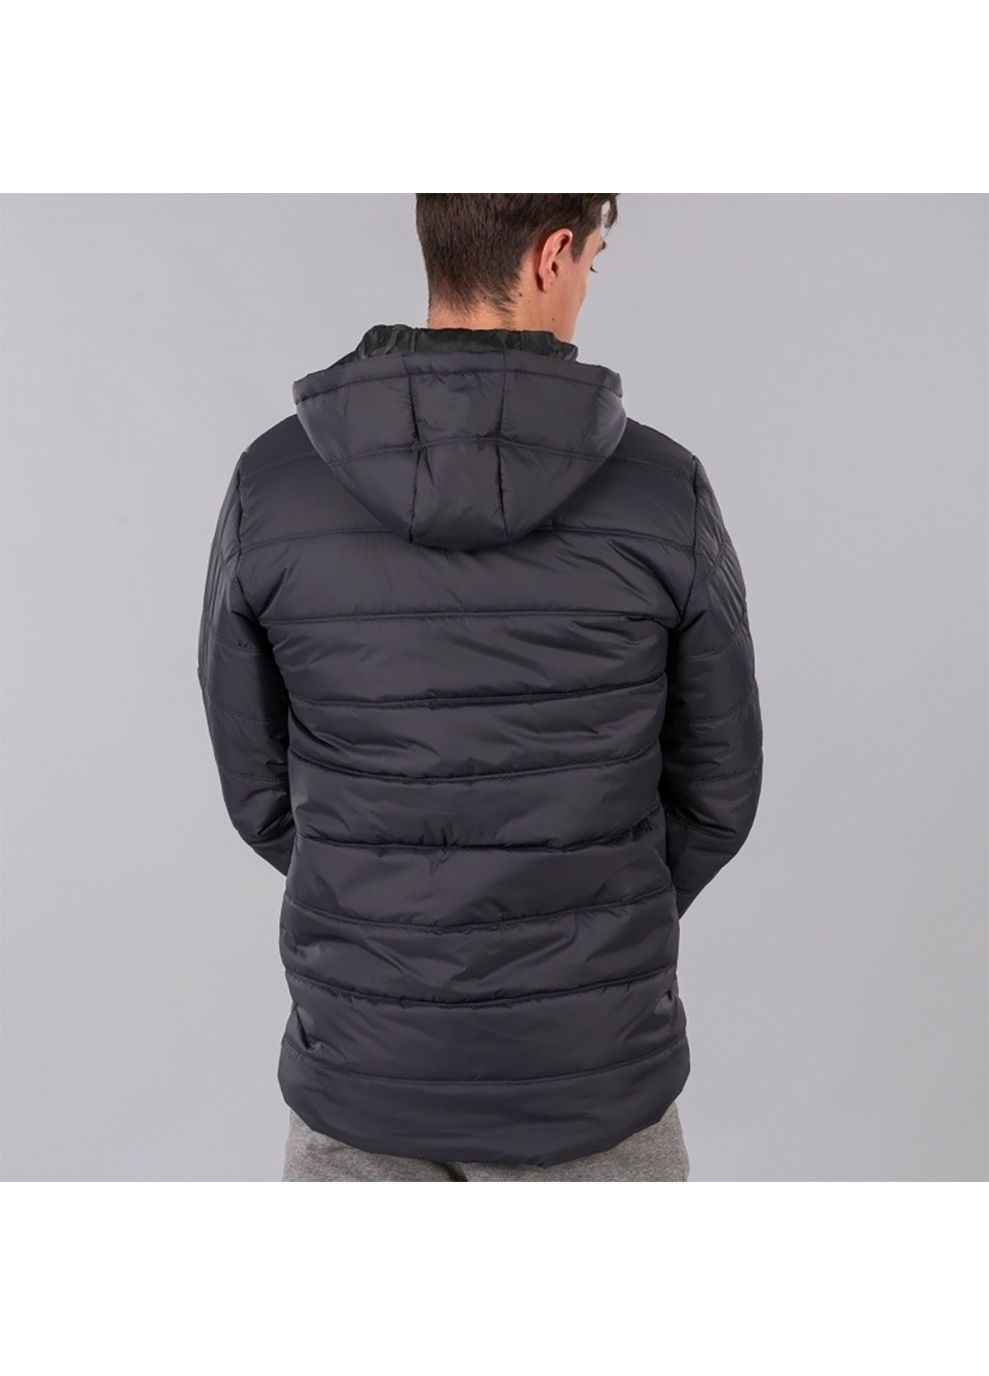 Темно-серая зимняя зимняя куртка urban jacket темно-серый Joma